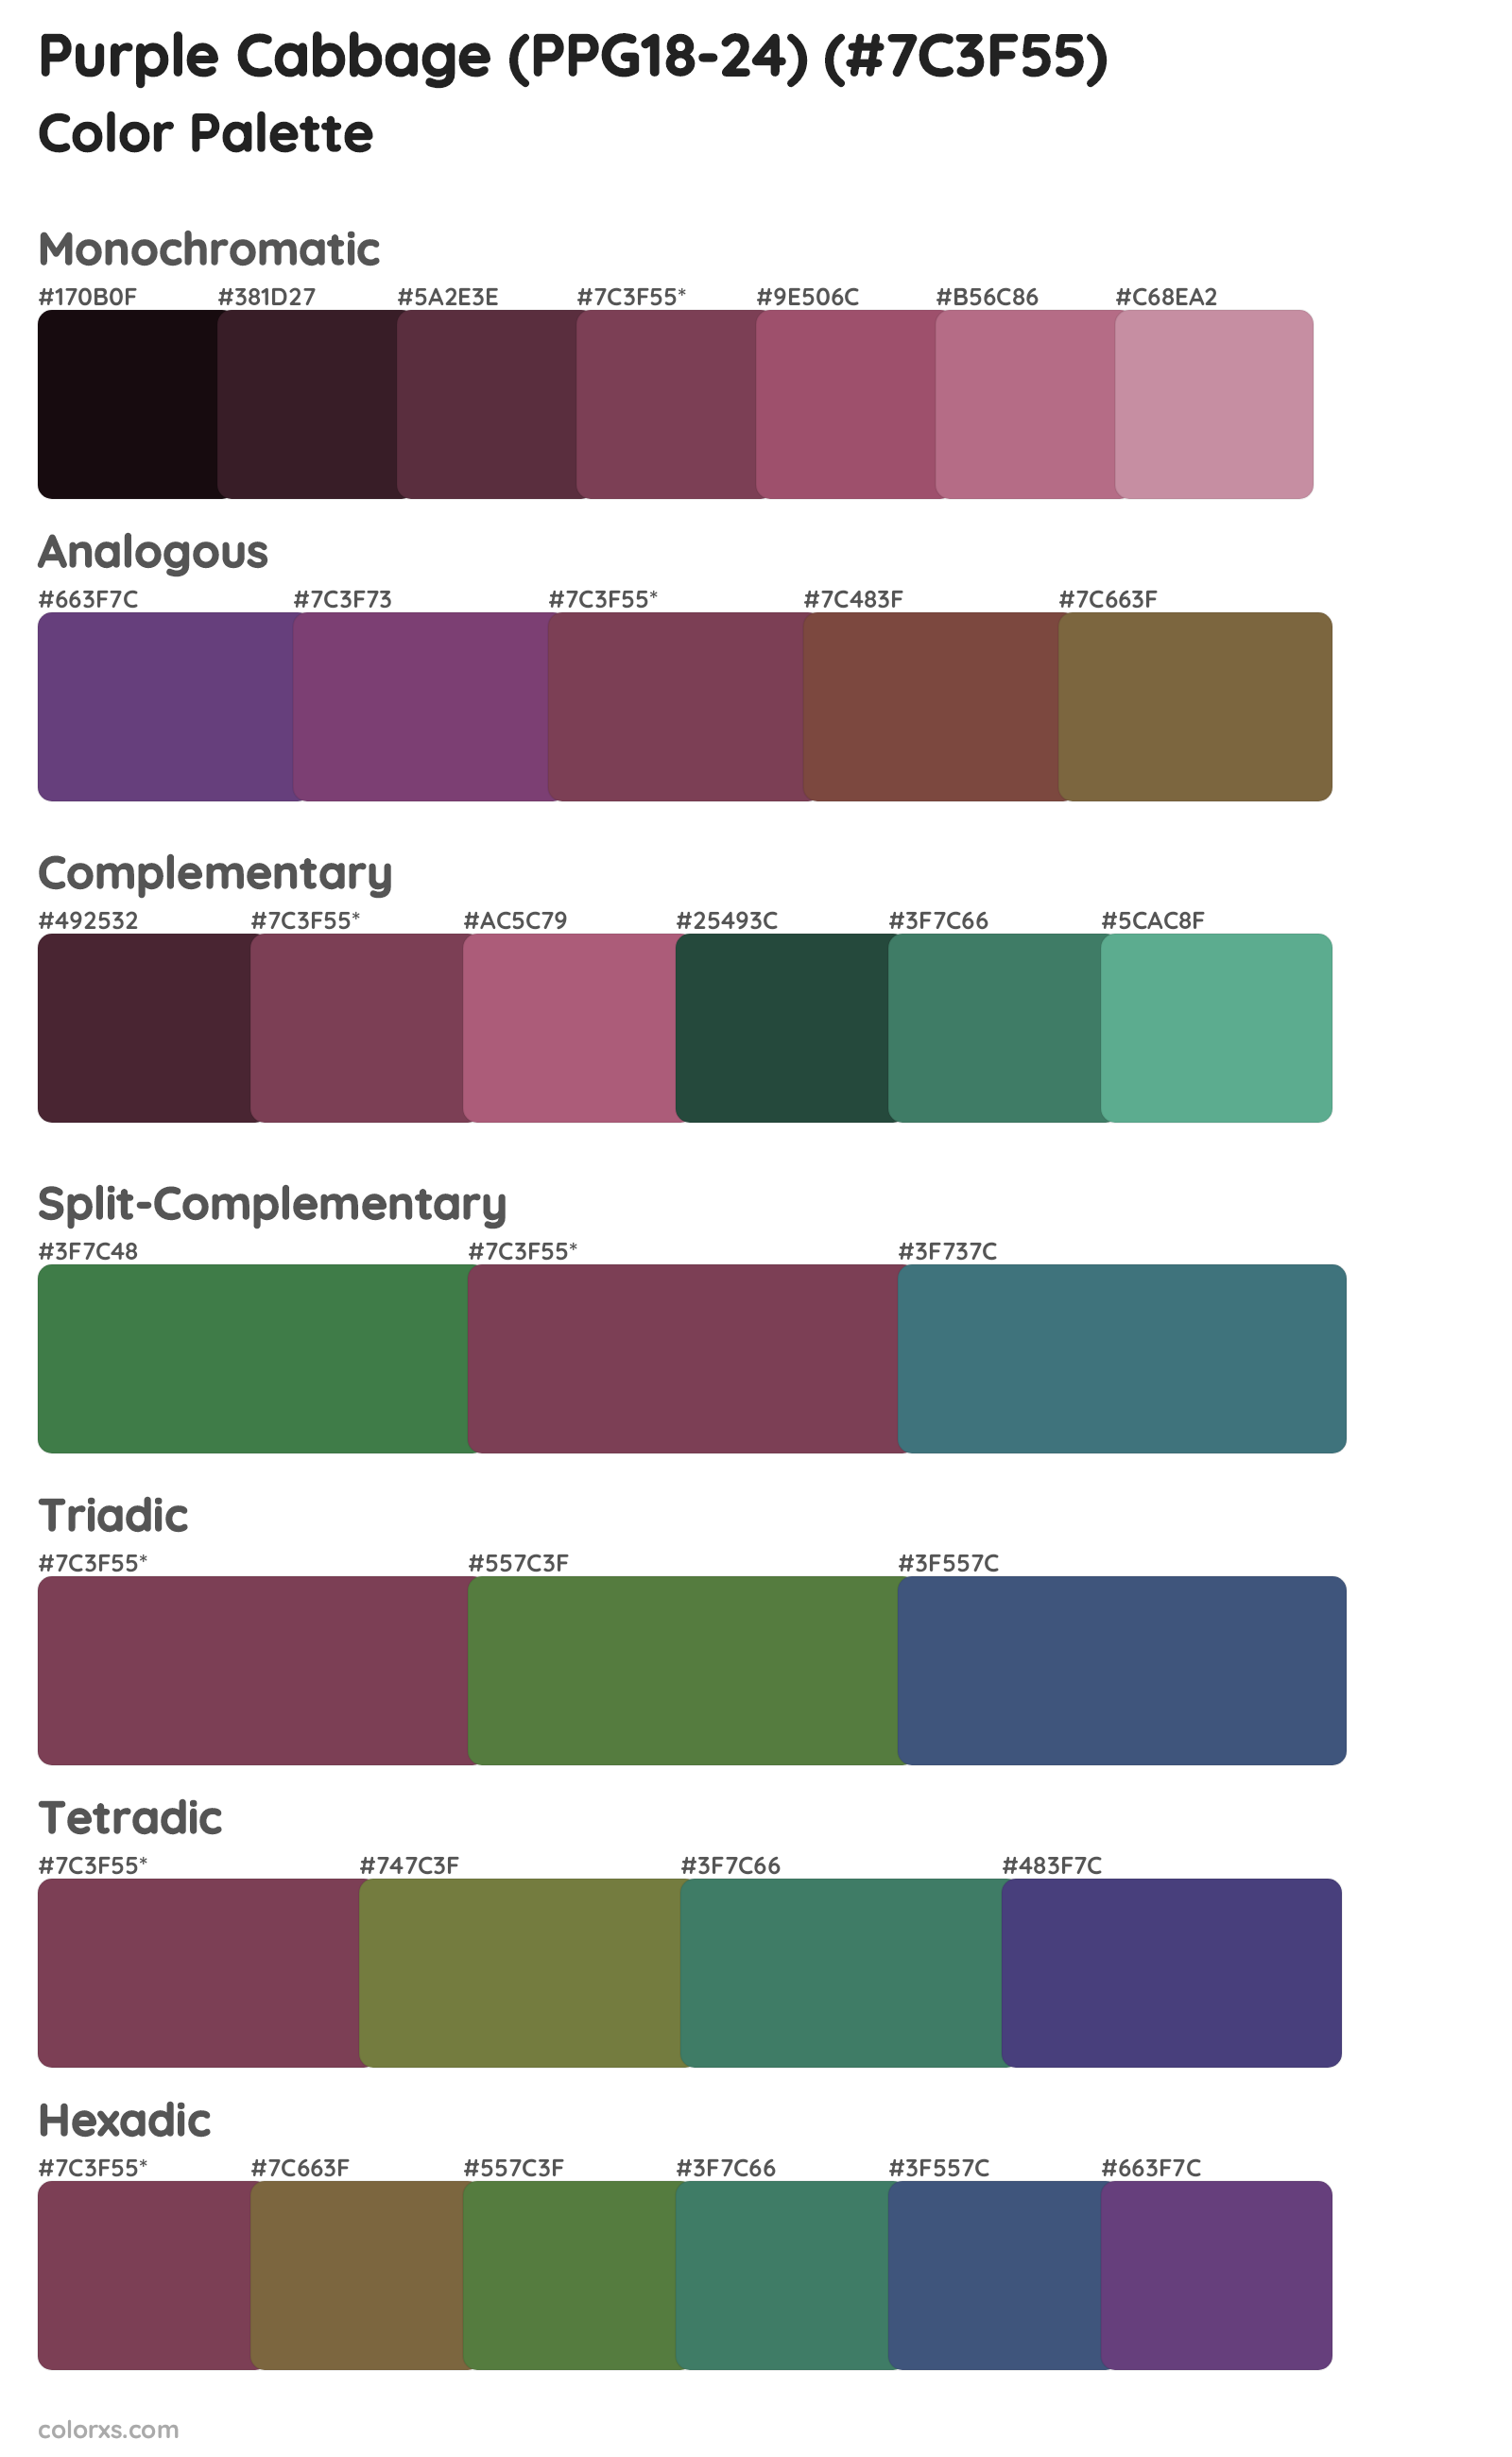 Purple Cabbage (PPG18-24) Color Scheme Palettes